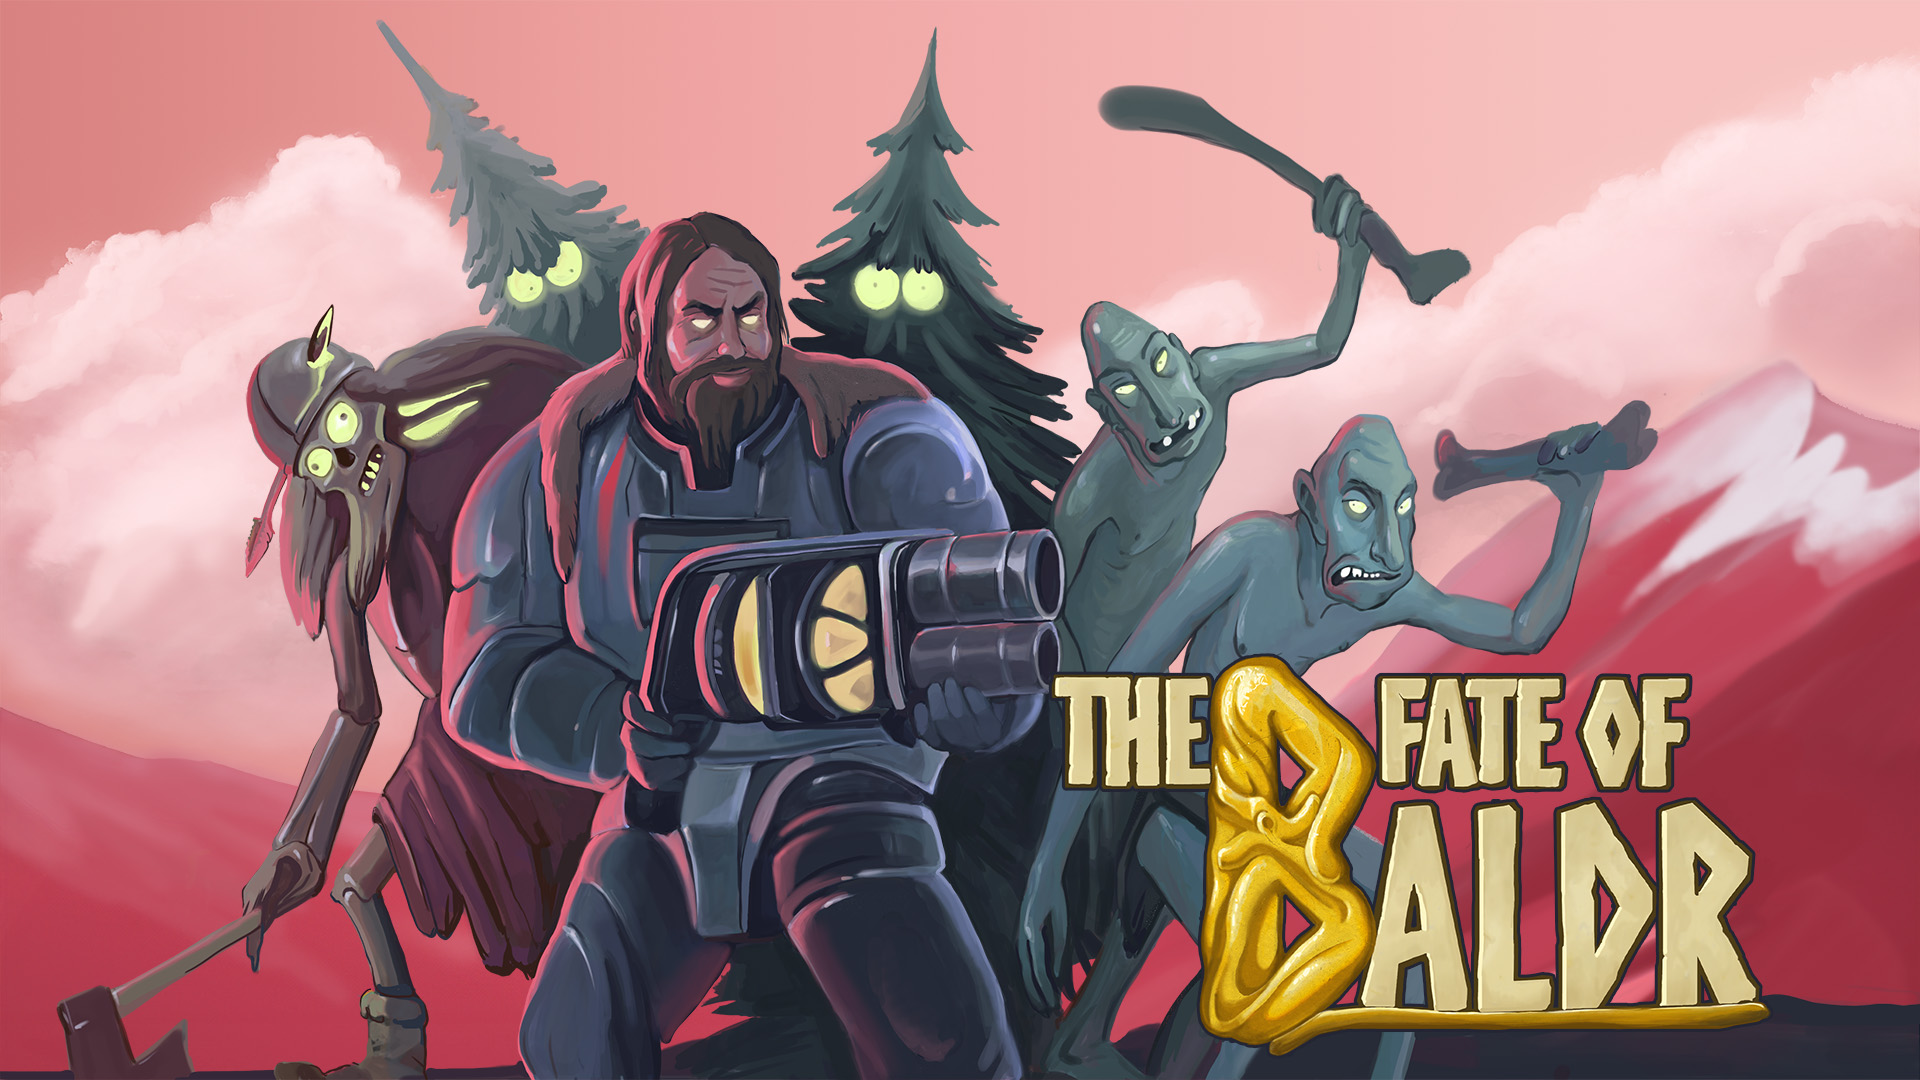 Ananki Game Studio rivela il nuovo trailer di The Fate of Baldr